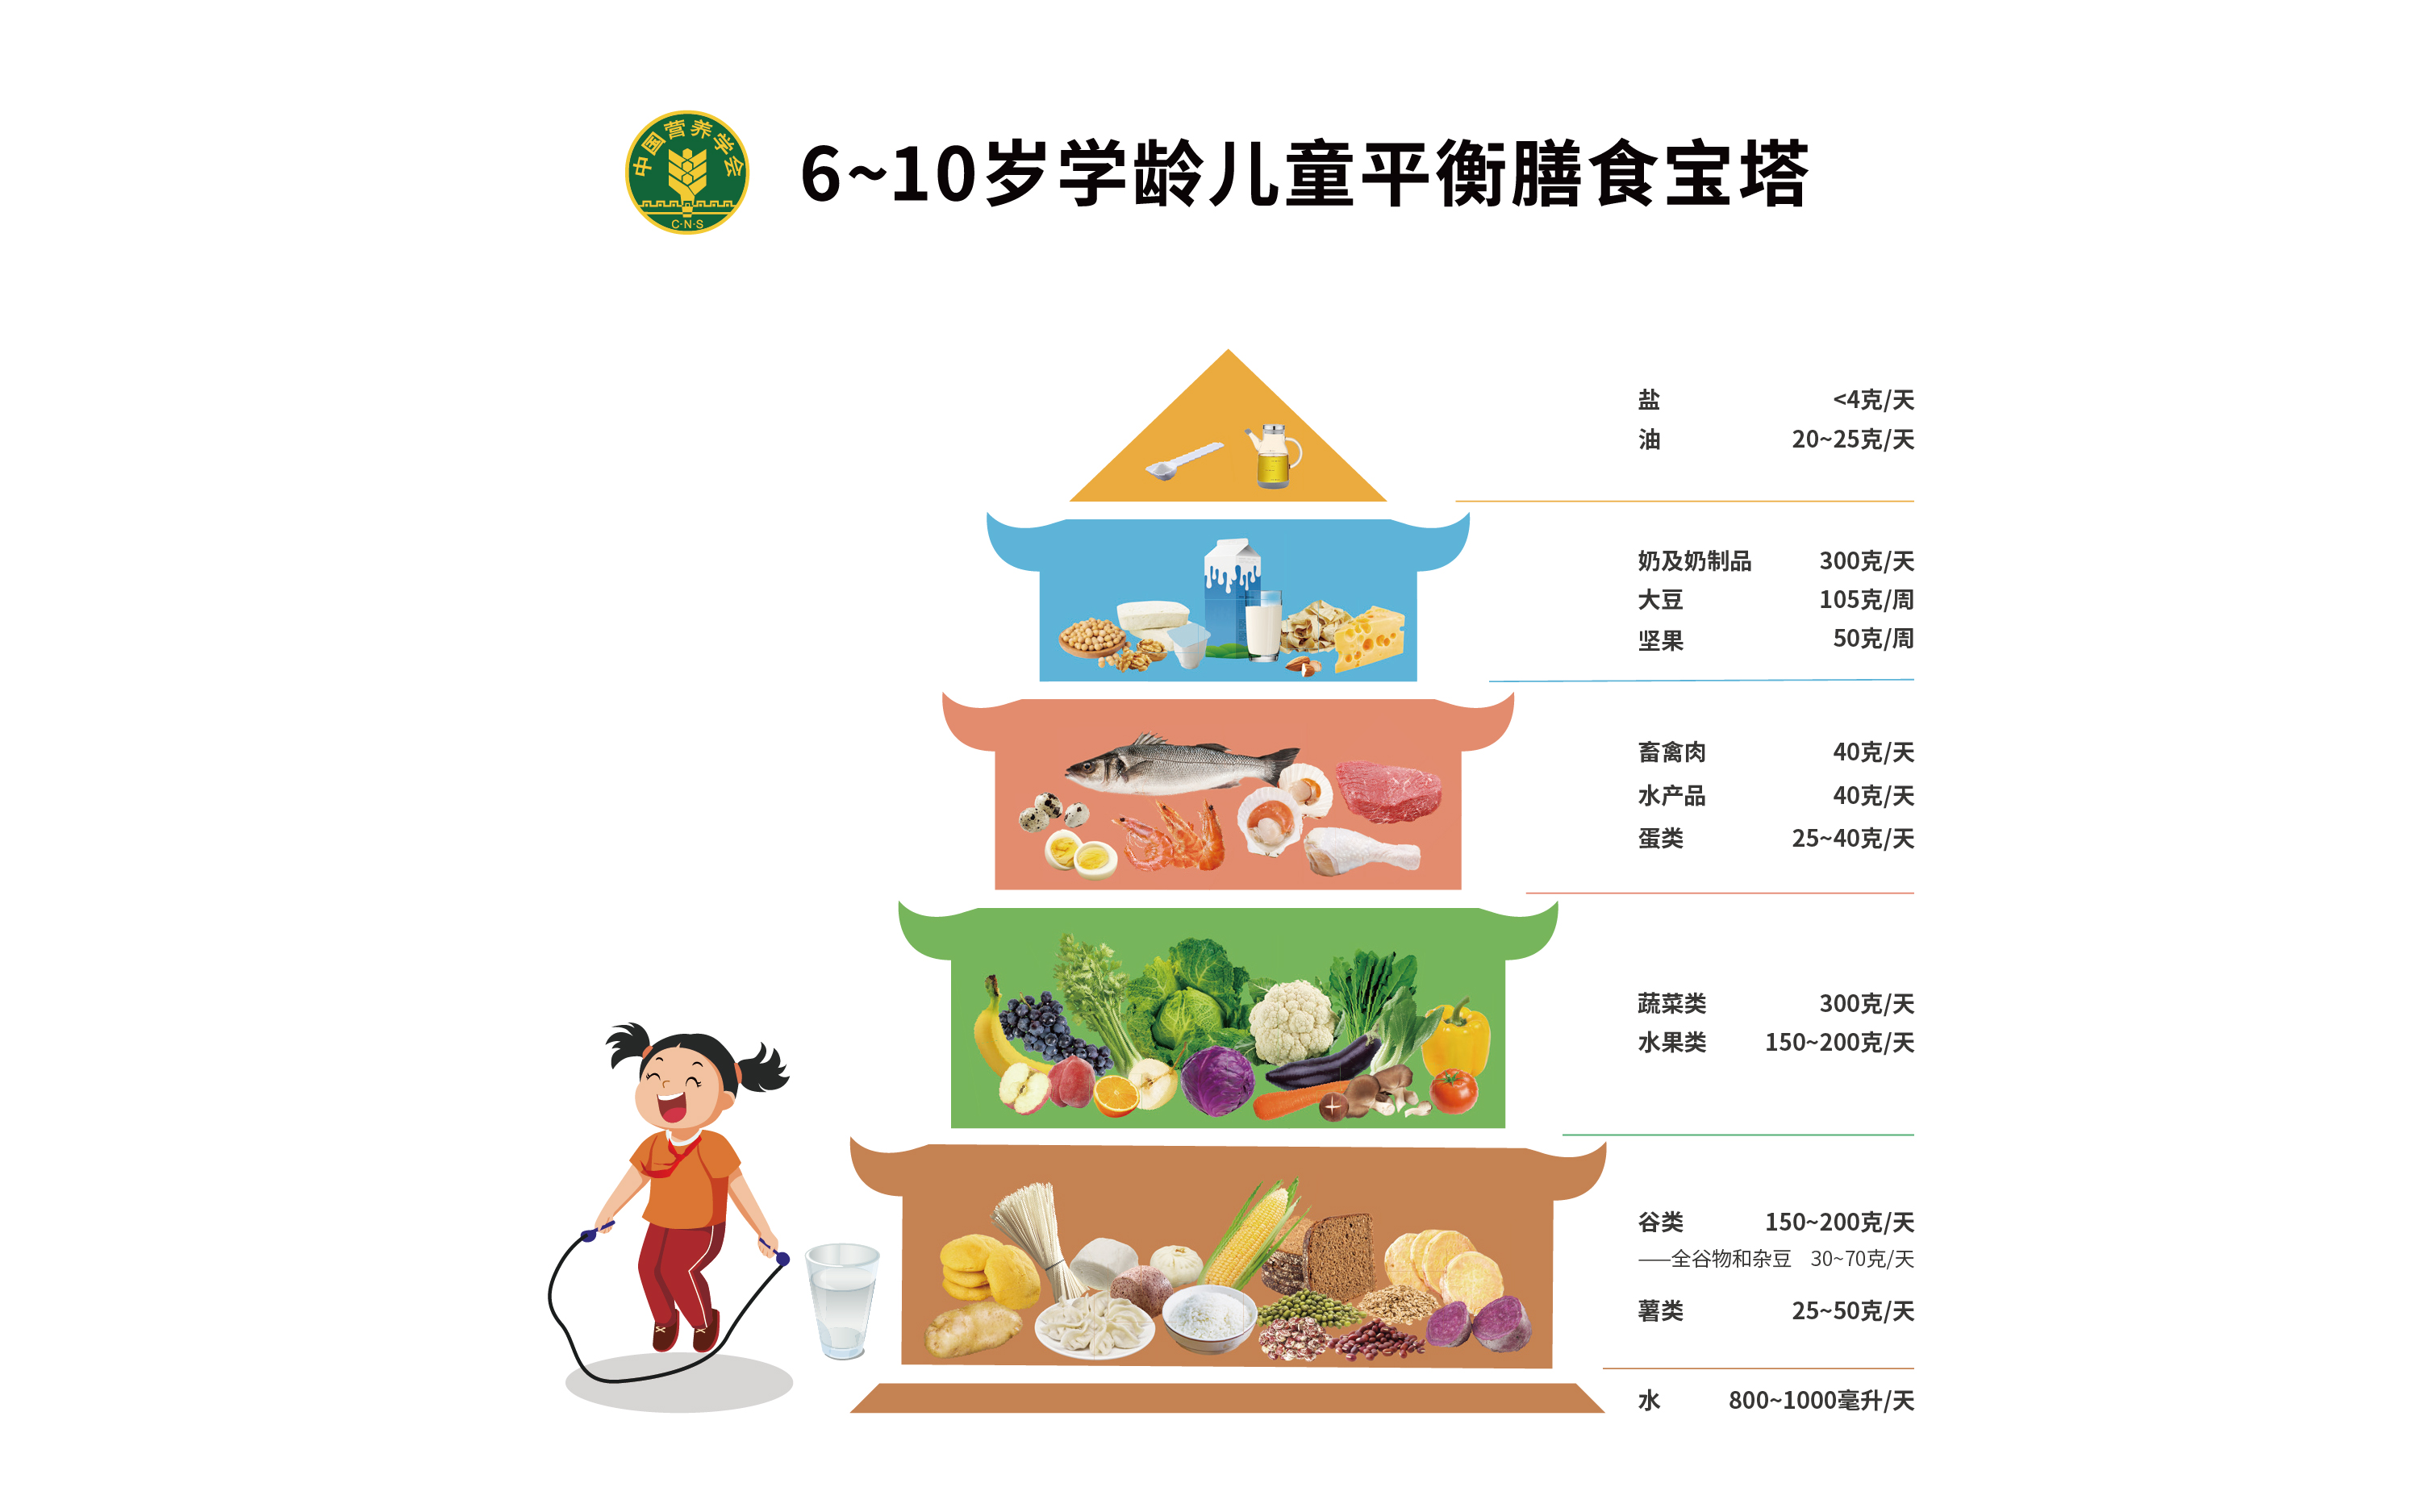 一文盘点中国学龄儿童膳食指南20225条核心推荐